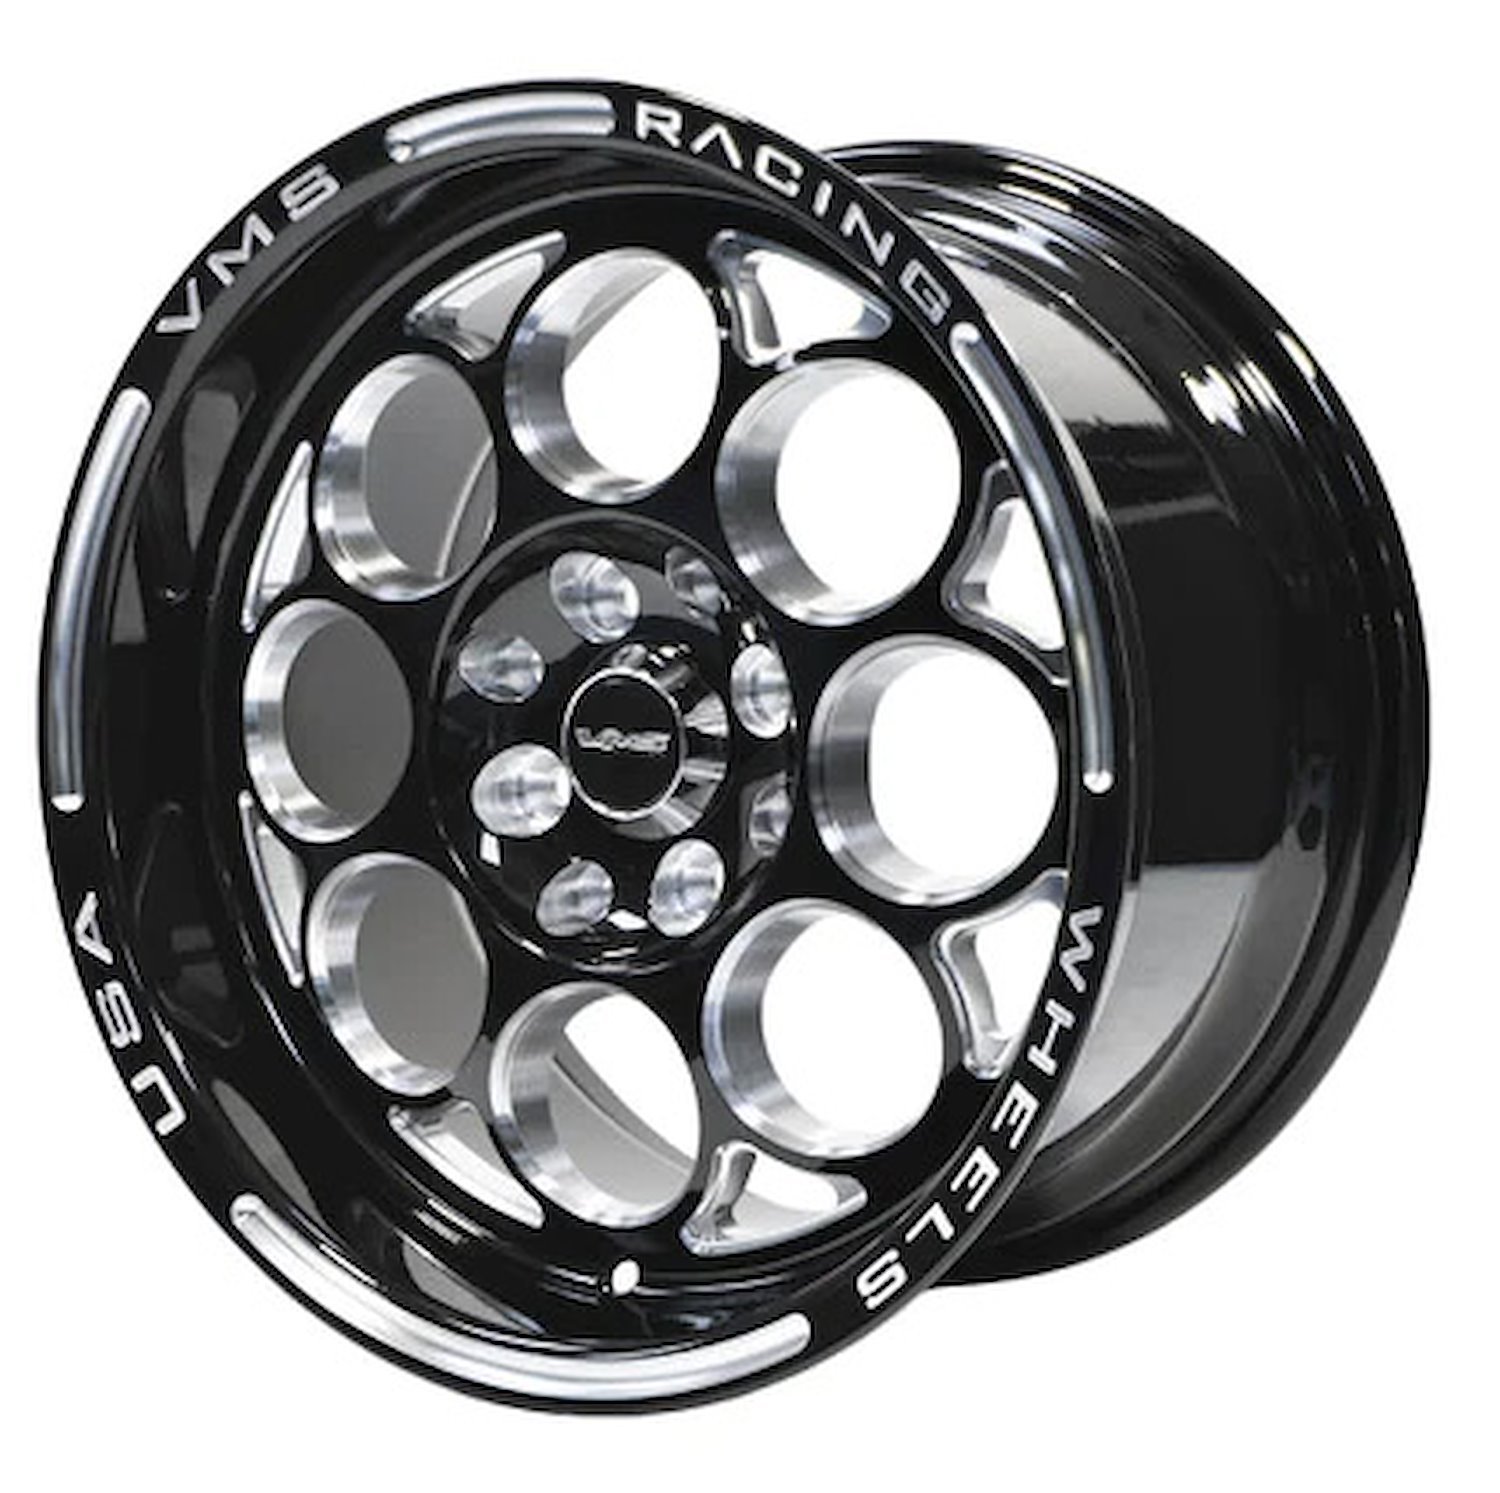 VWMO018 Modulo Wheel, Size: 15" x 10", Bolt Pattern: 5 x 4 3/4" (120.65 mm) [Finish: Gloss Black Milled]